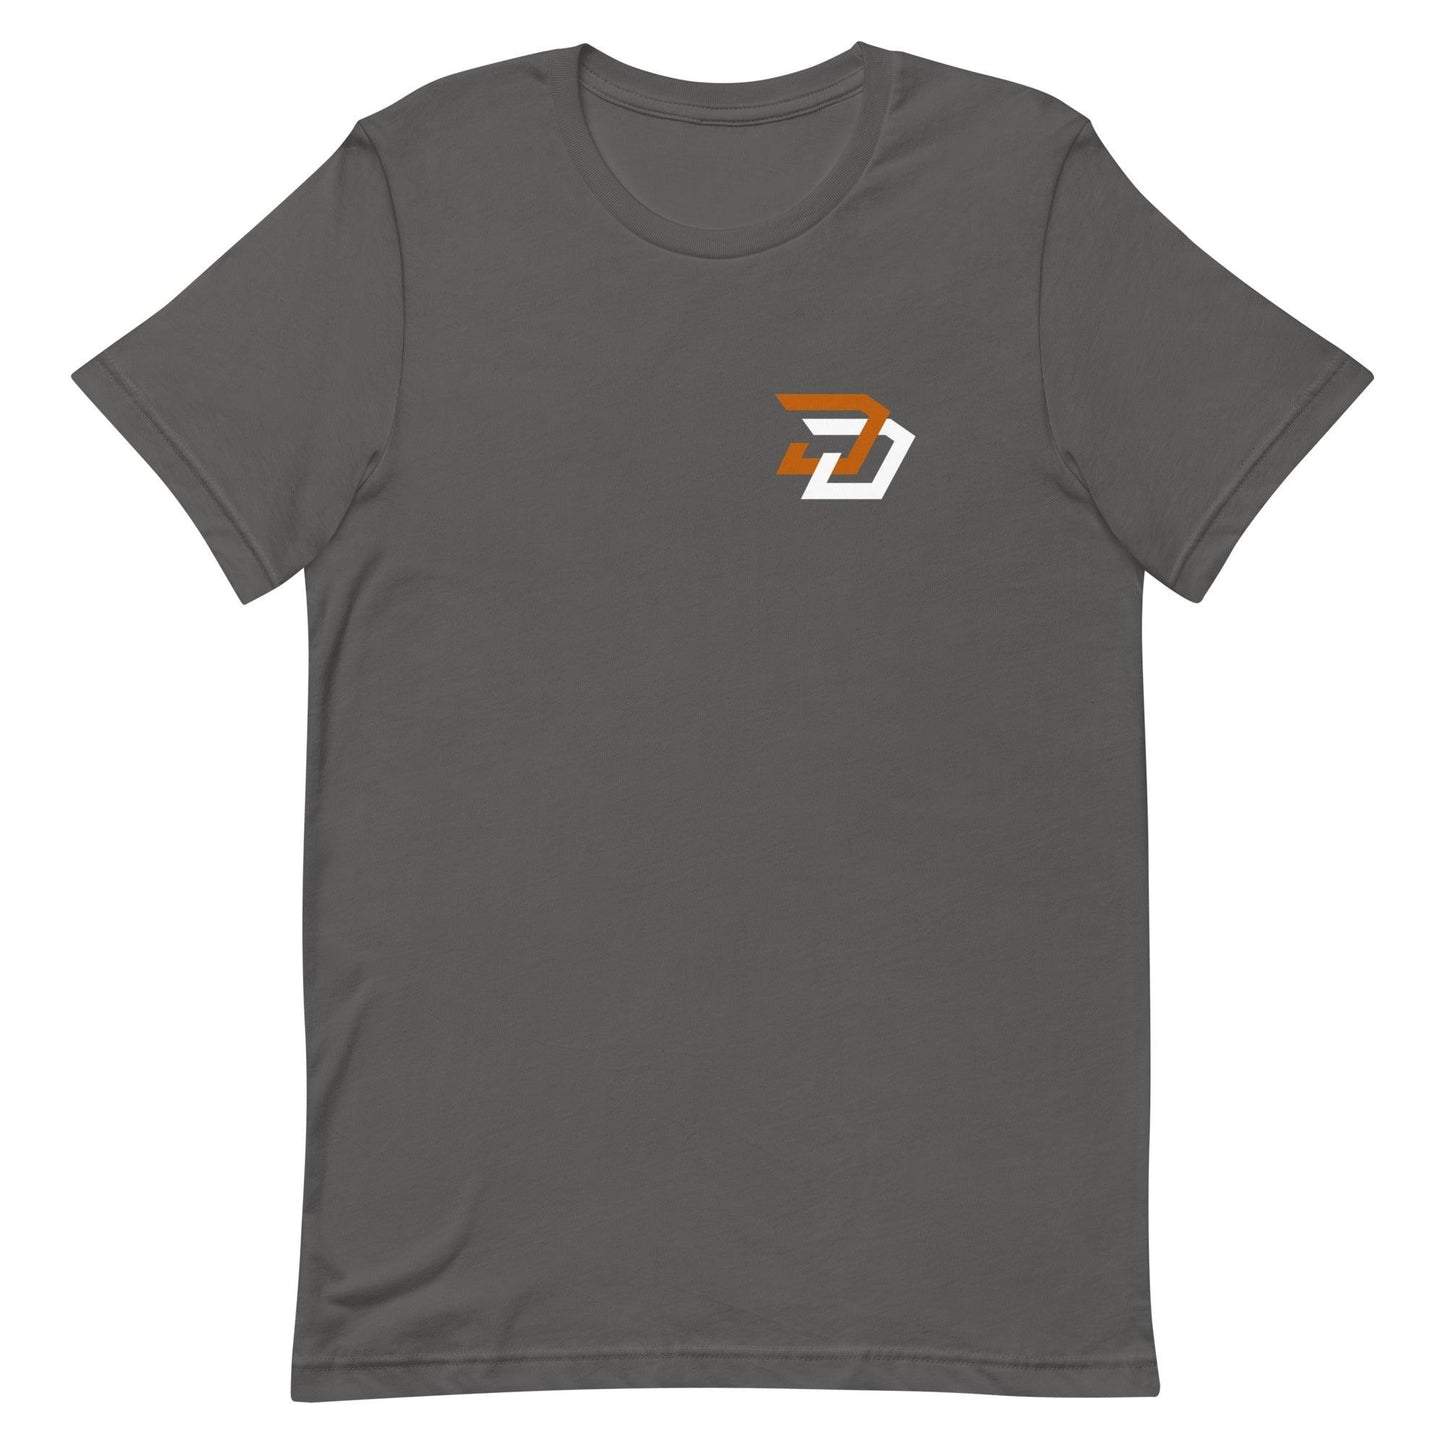 Dayne Davis "Elite" t-shirt - Fan Arch